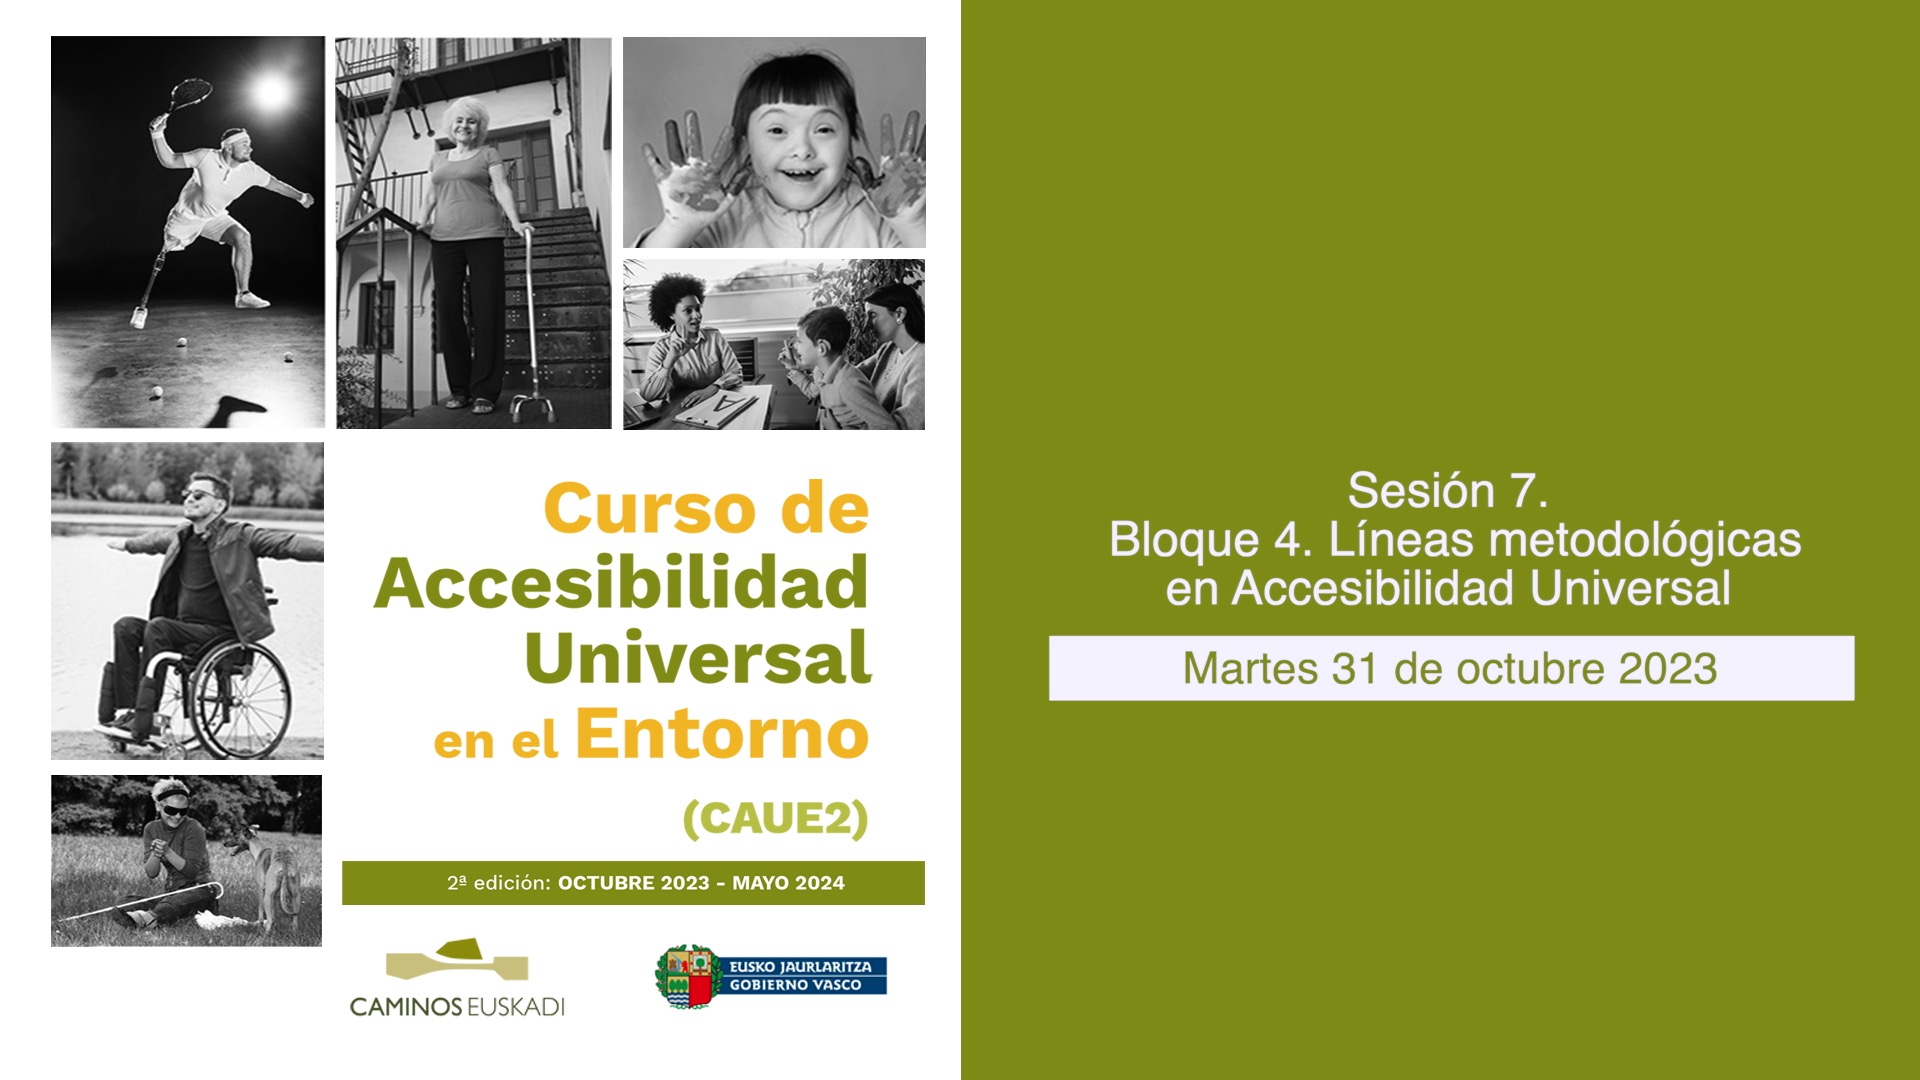 Sesión 7. - Bloque 4. Líneas metodológicas en Accesibilidad Universal